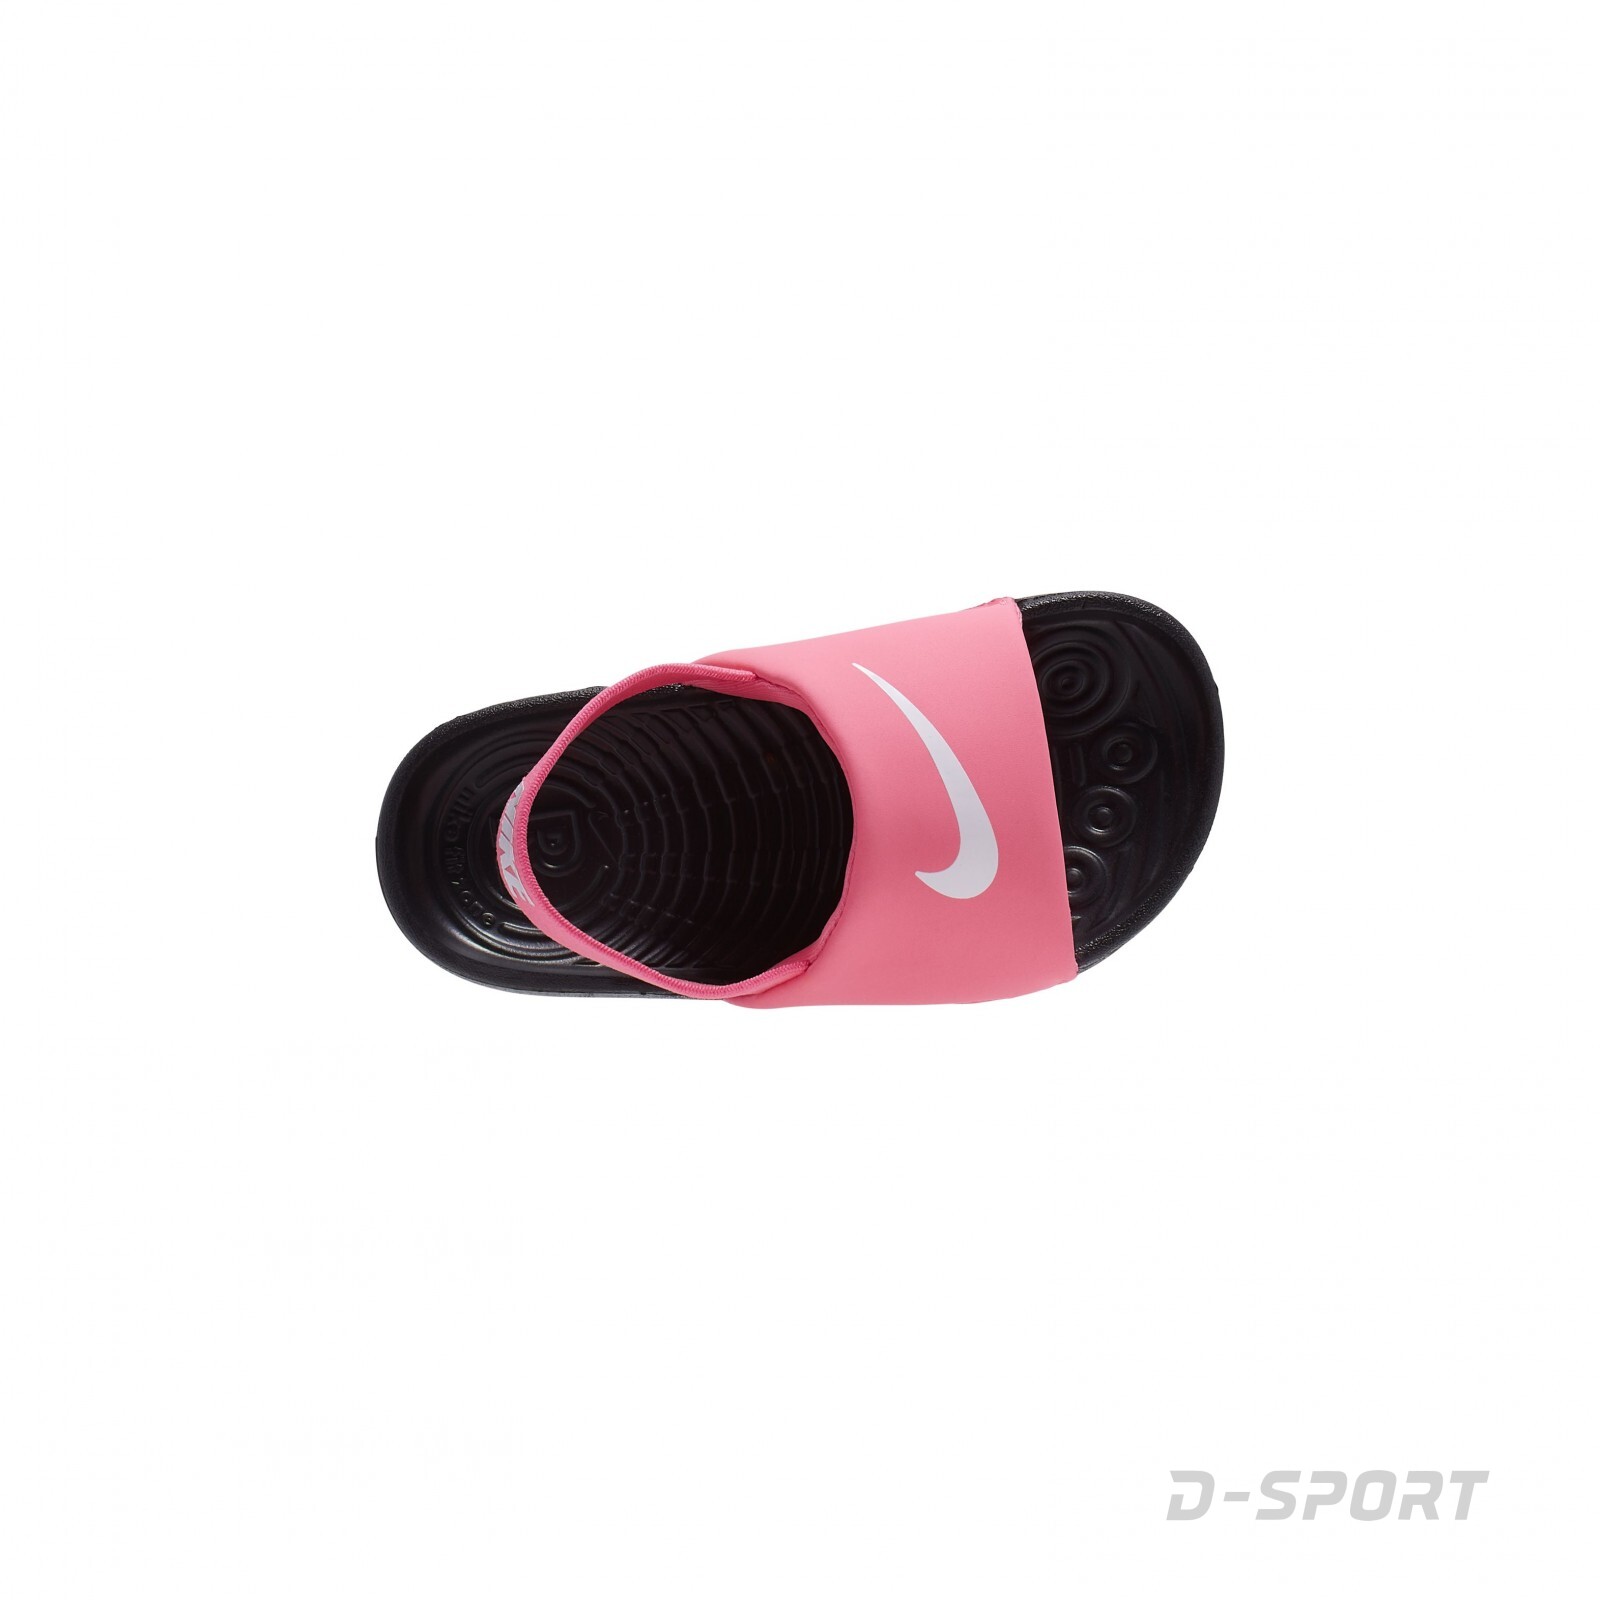 Nike kawa slide